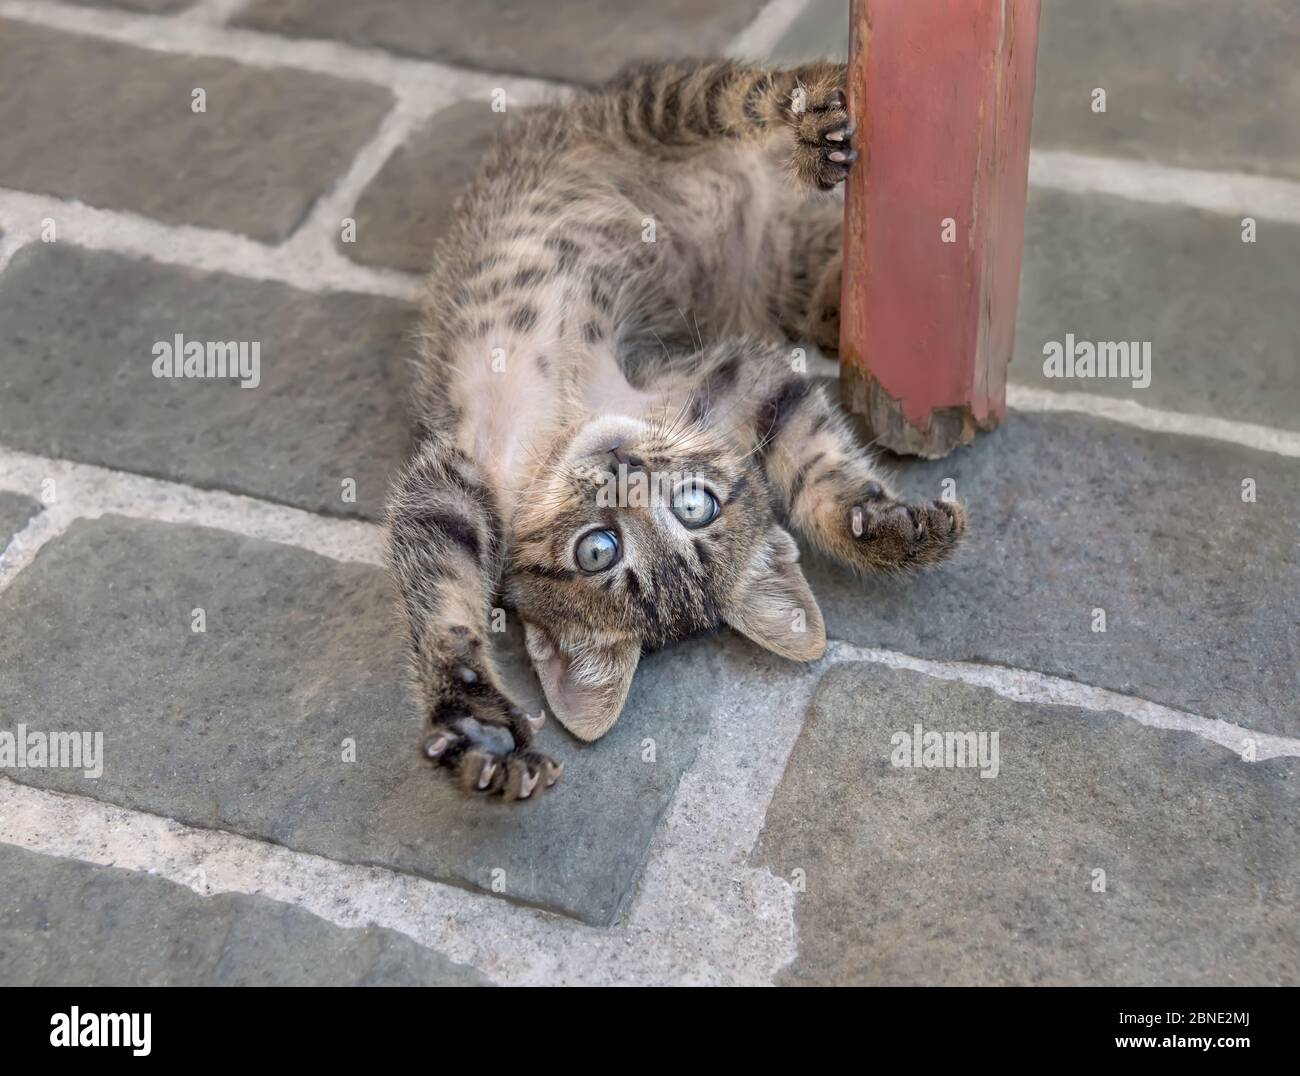 Carino gattino marrone tabby gattino giocherello su terreno pietroso, rotolare intorno sulla sua schiena, espone il suo ventre e guardando curioso, Creta, Grecia Foto Stock